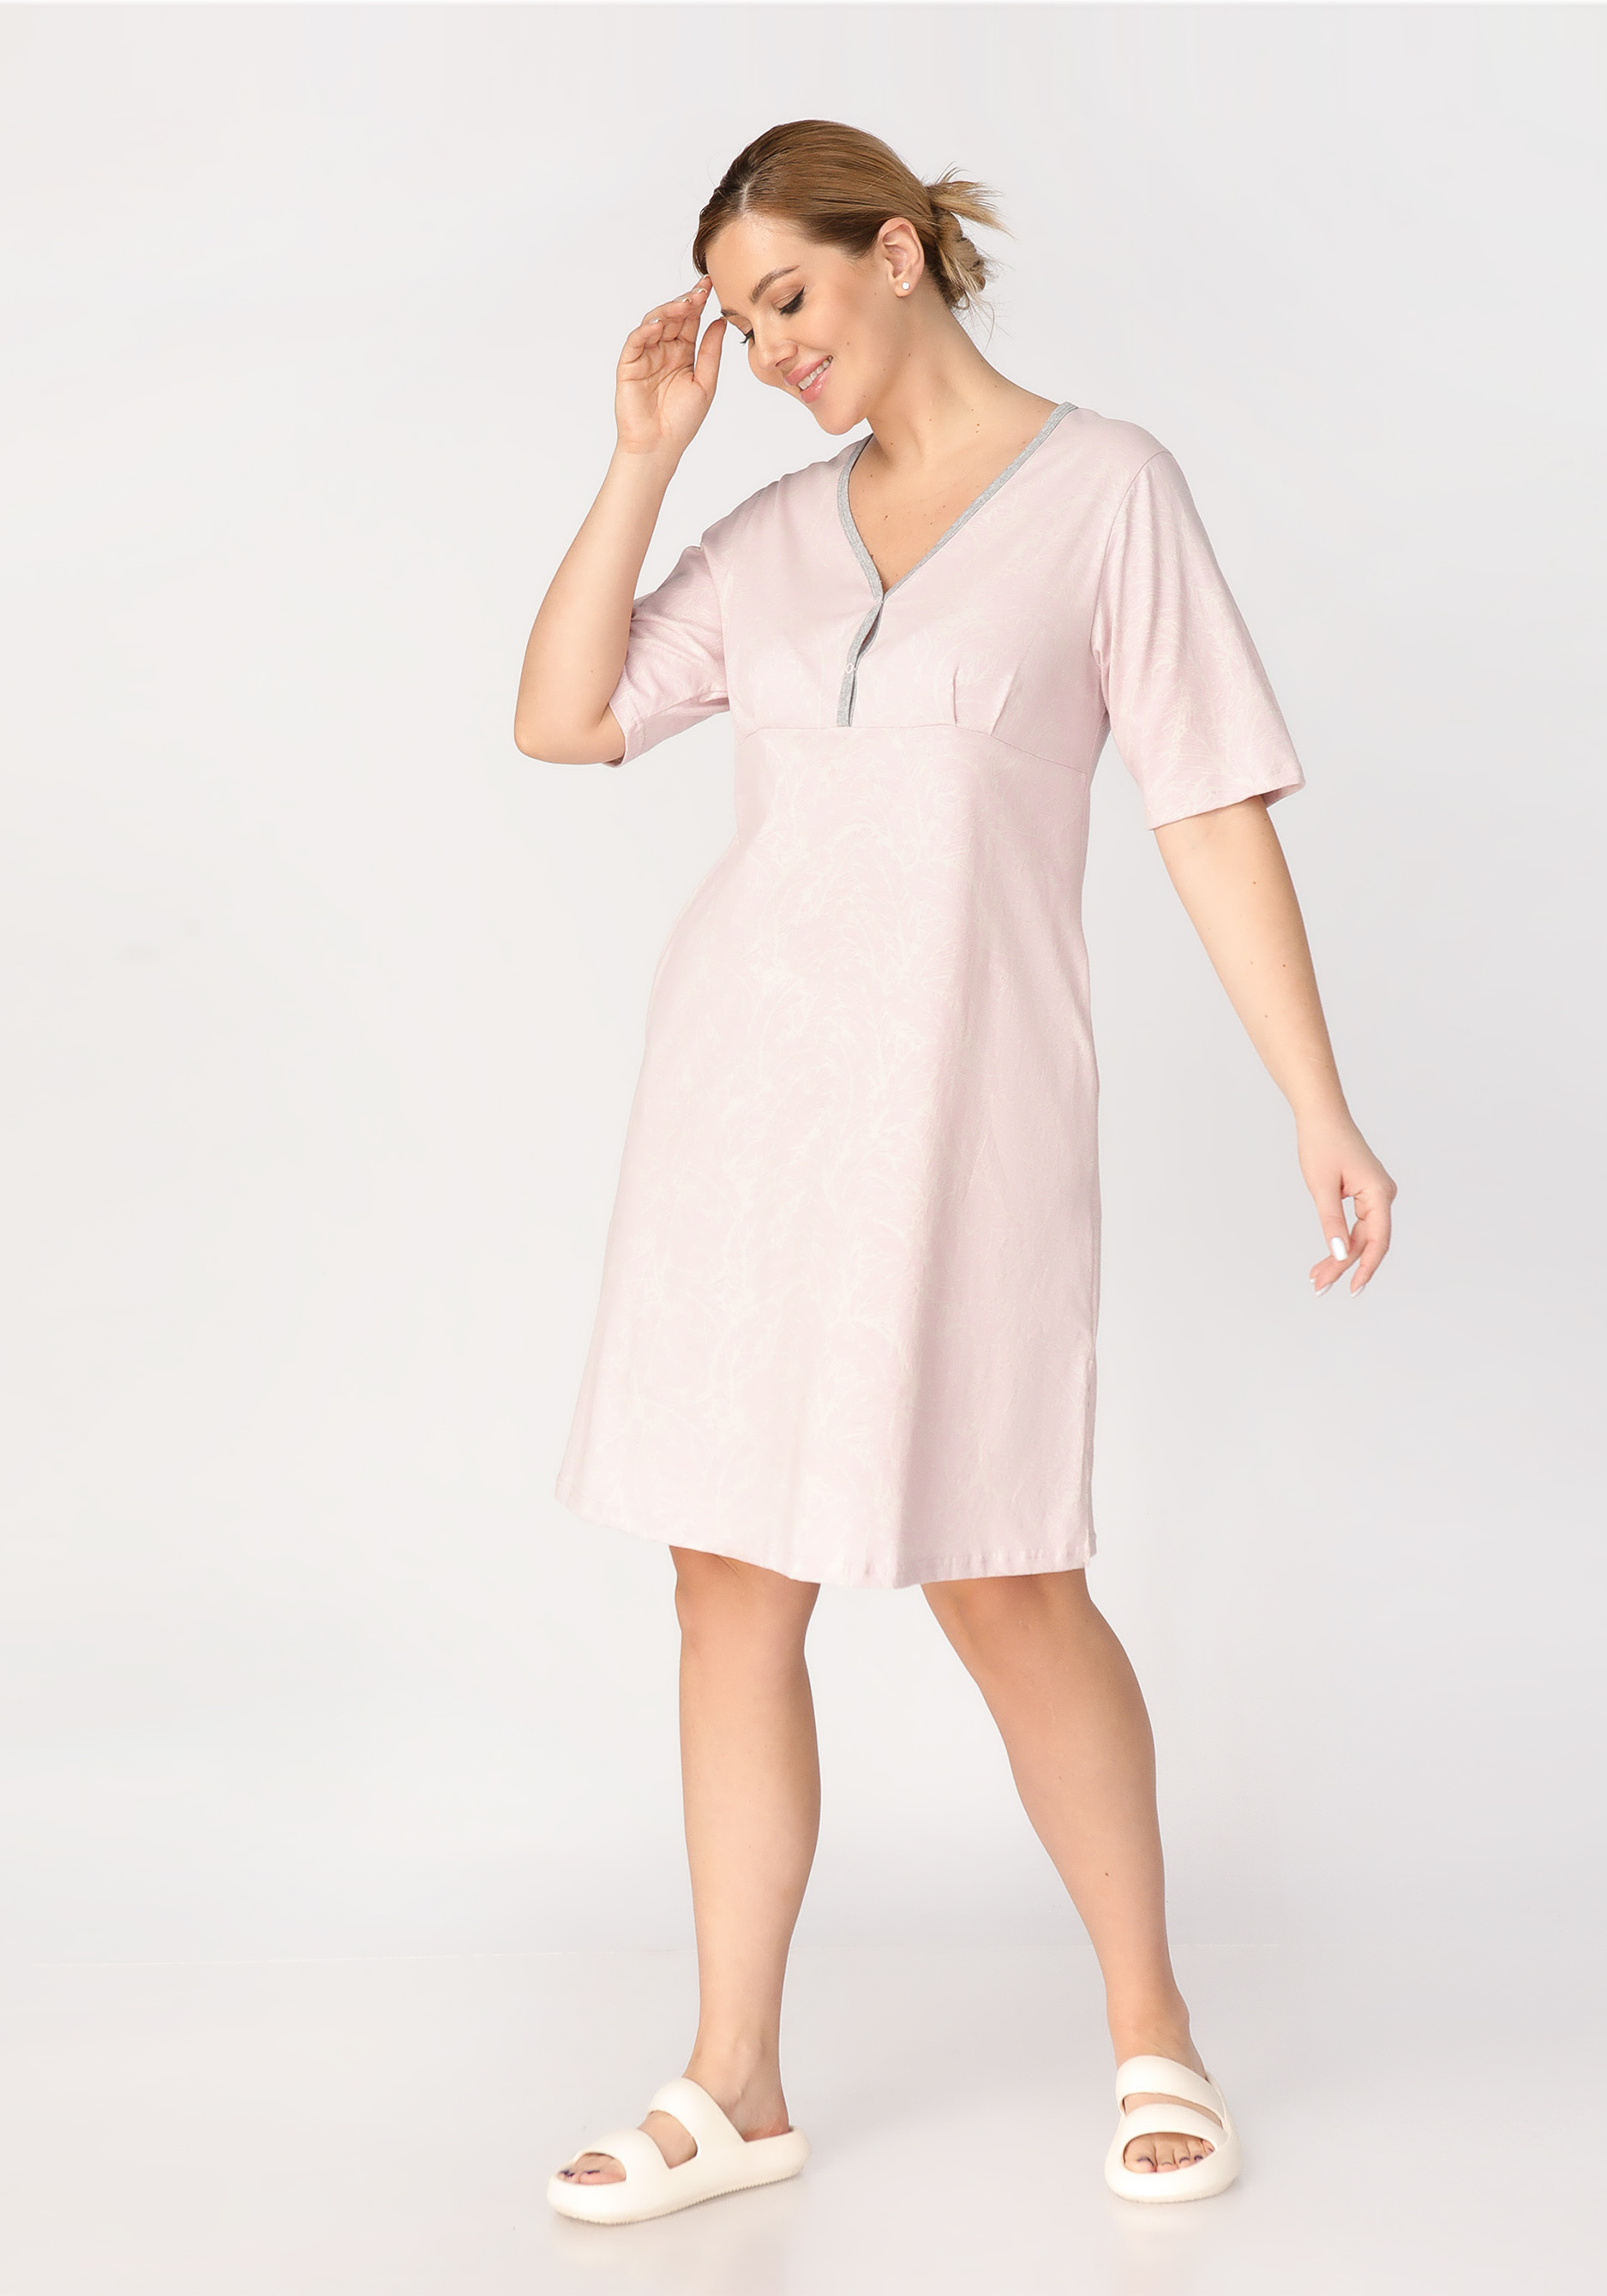 Платье домашнее свободного силуэта «Небула», цвет розовый, размер 46-48